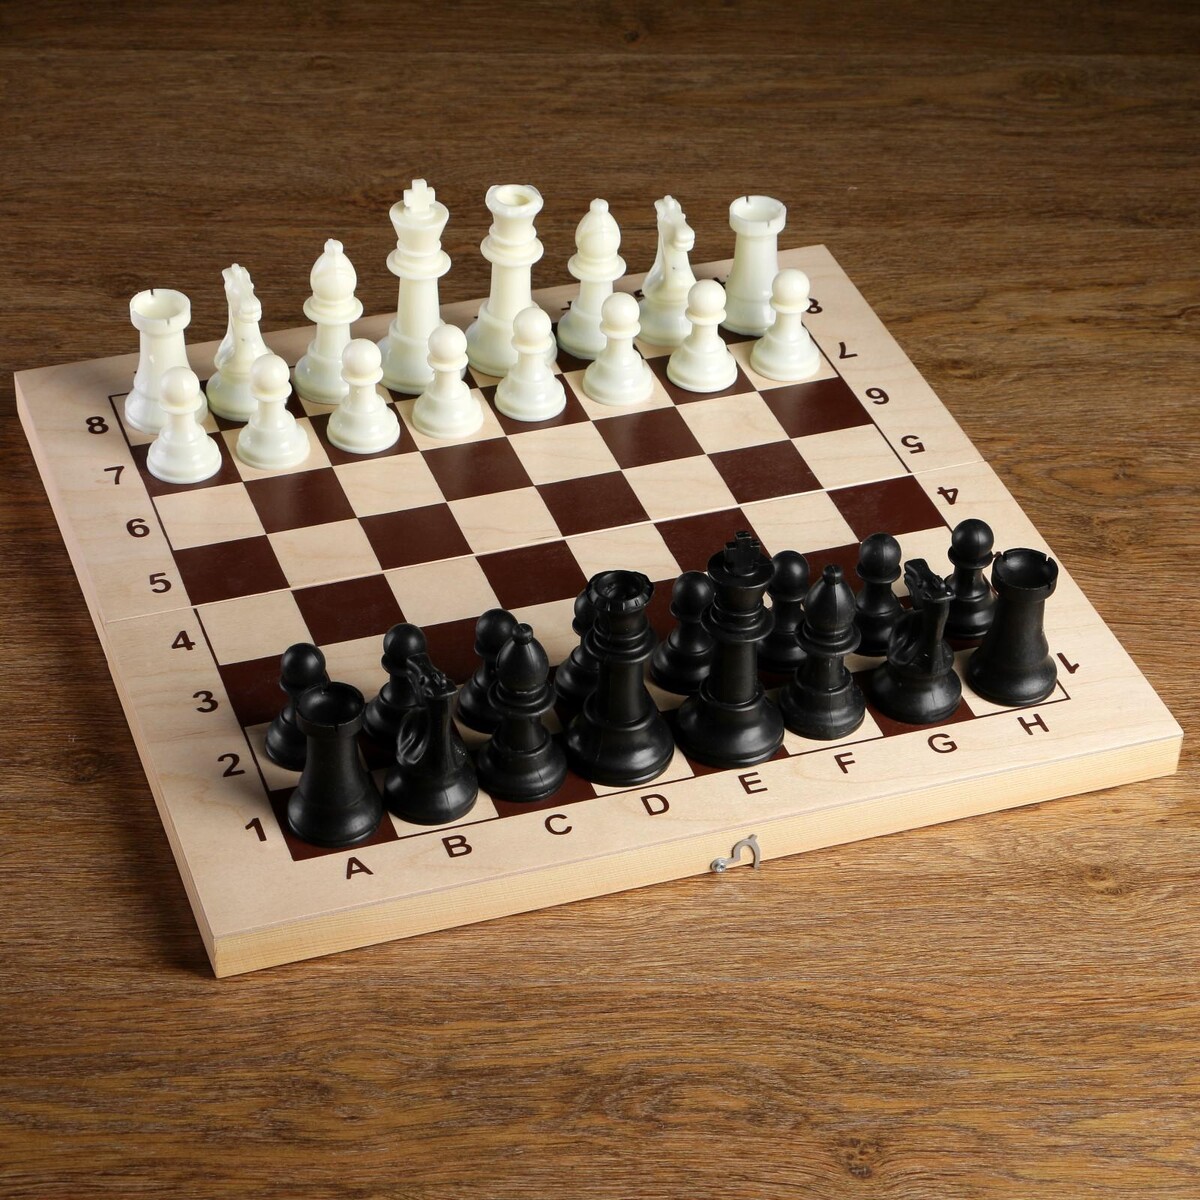 Шахматные фигуры, пластик, король h-10.5 см, пешка h-5 см титановый король